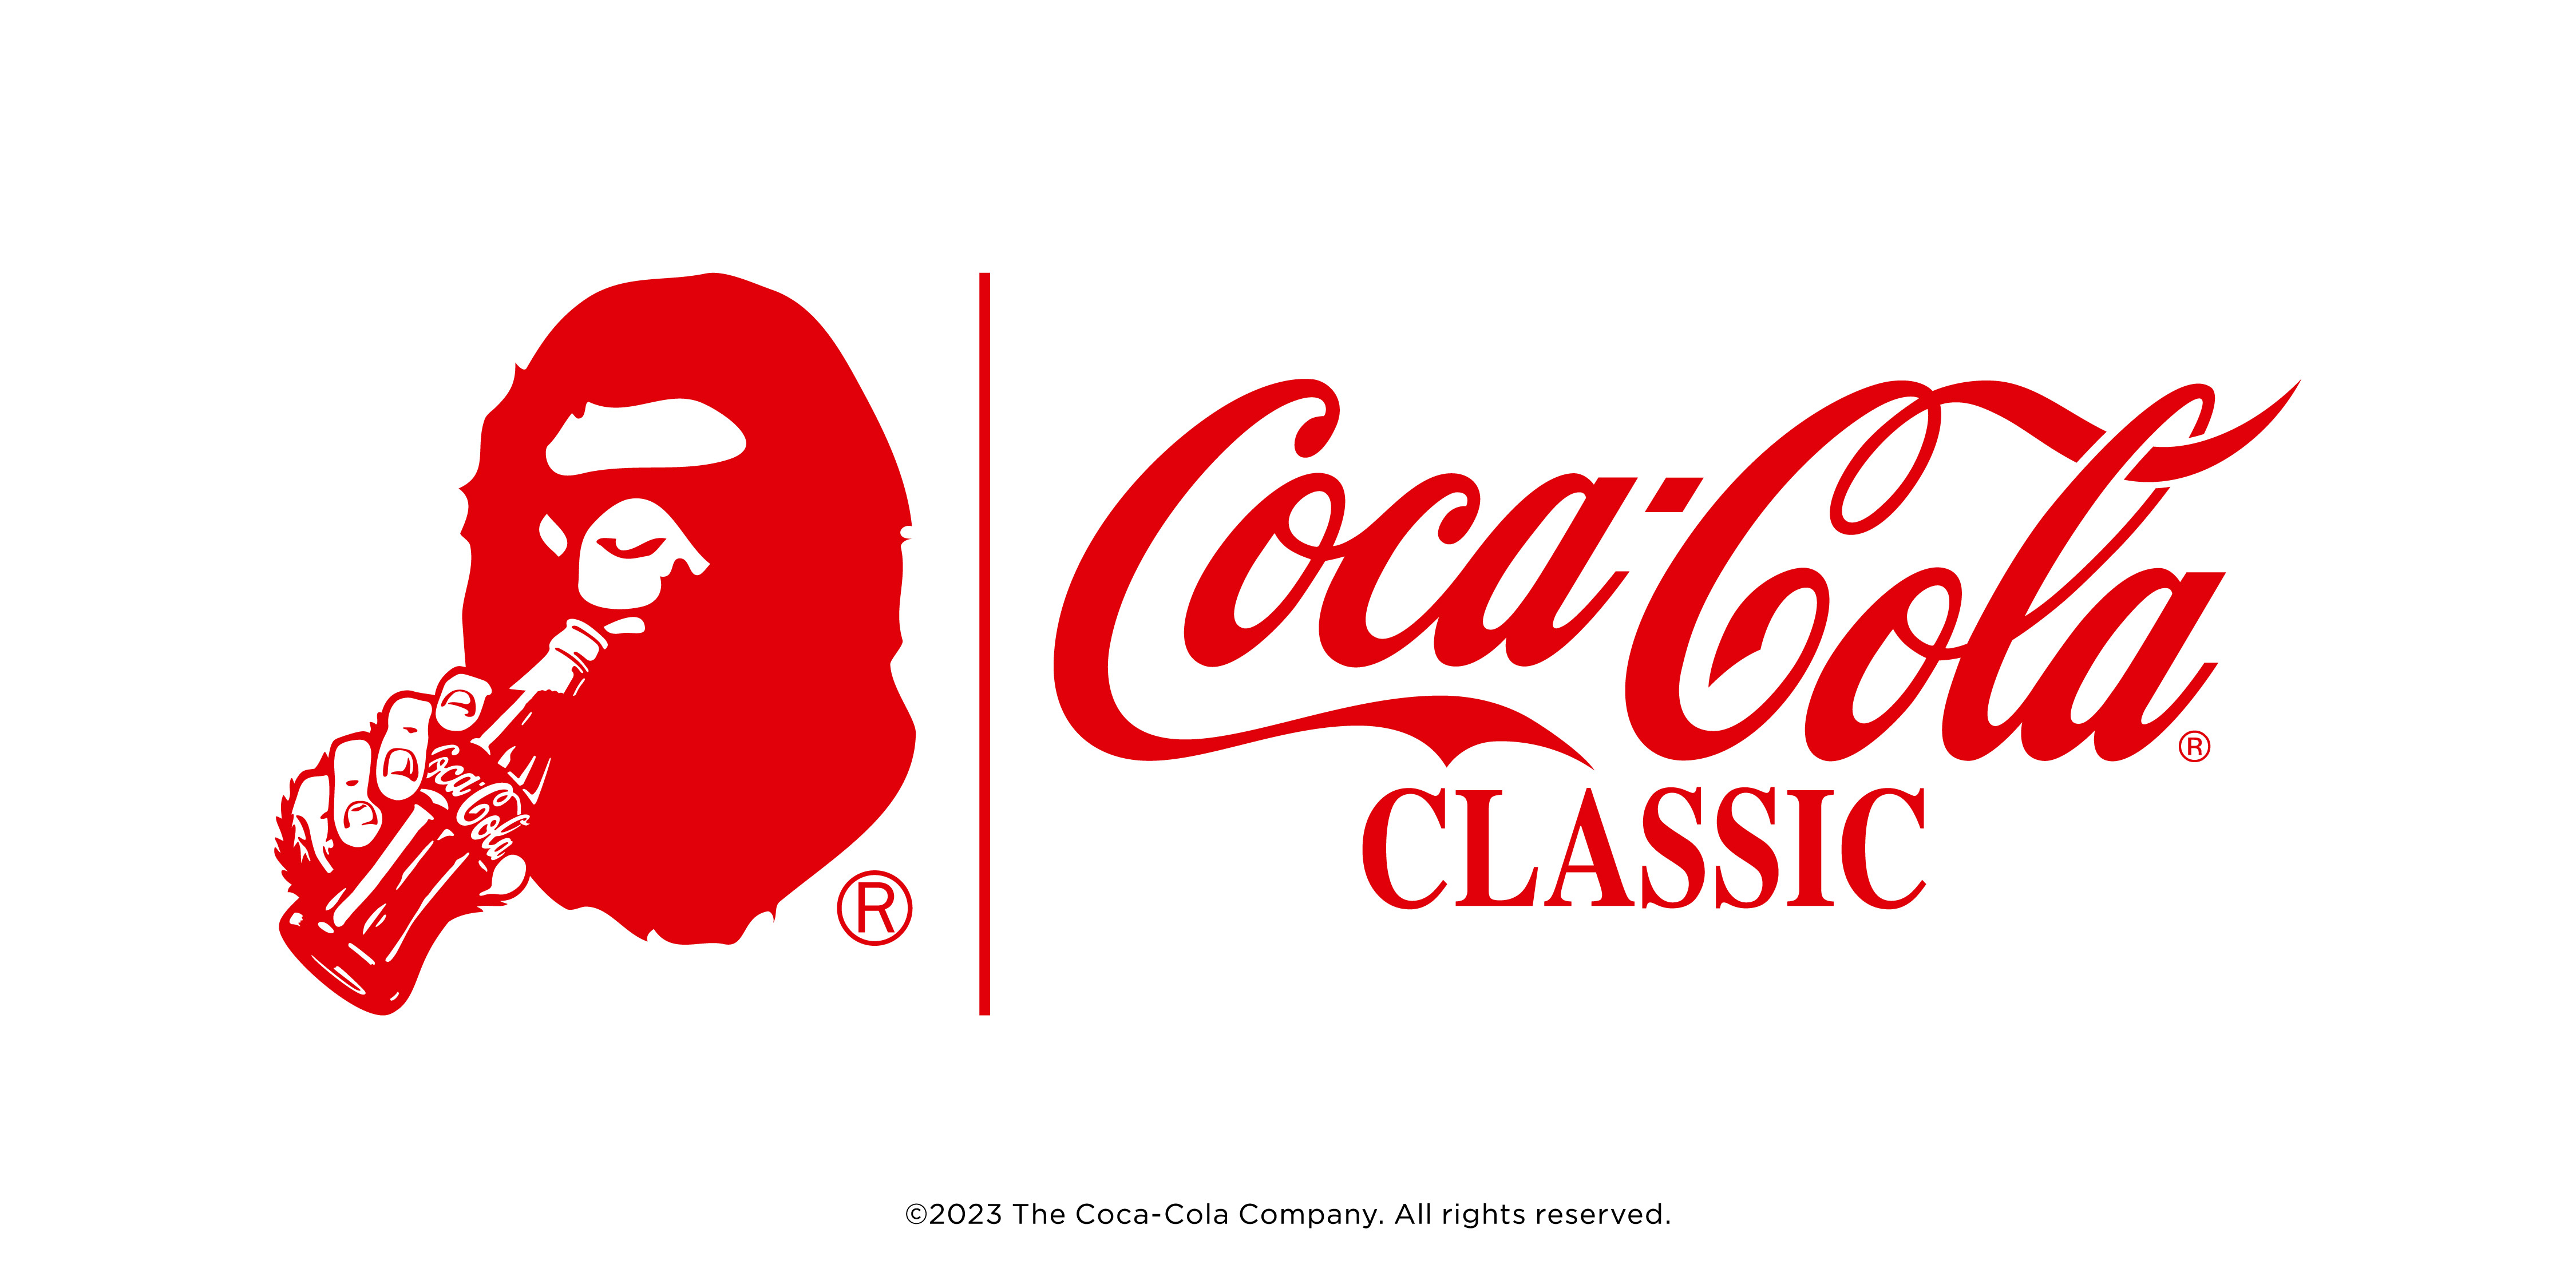 30周年を祝うA BATHING APE®×Coca-Cola®の最新コラボレーションが登場